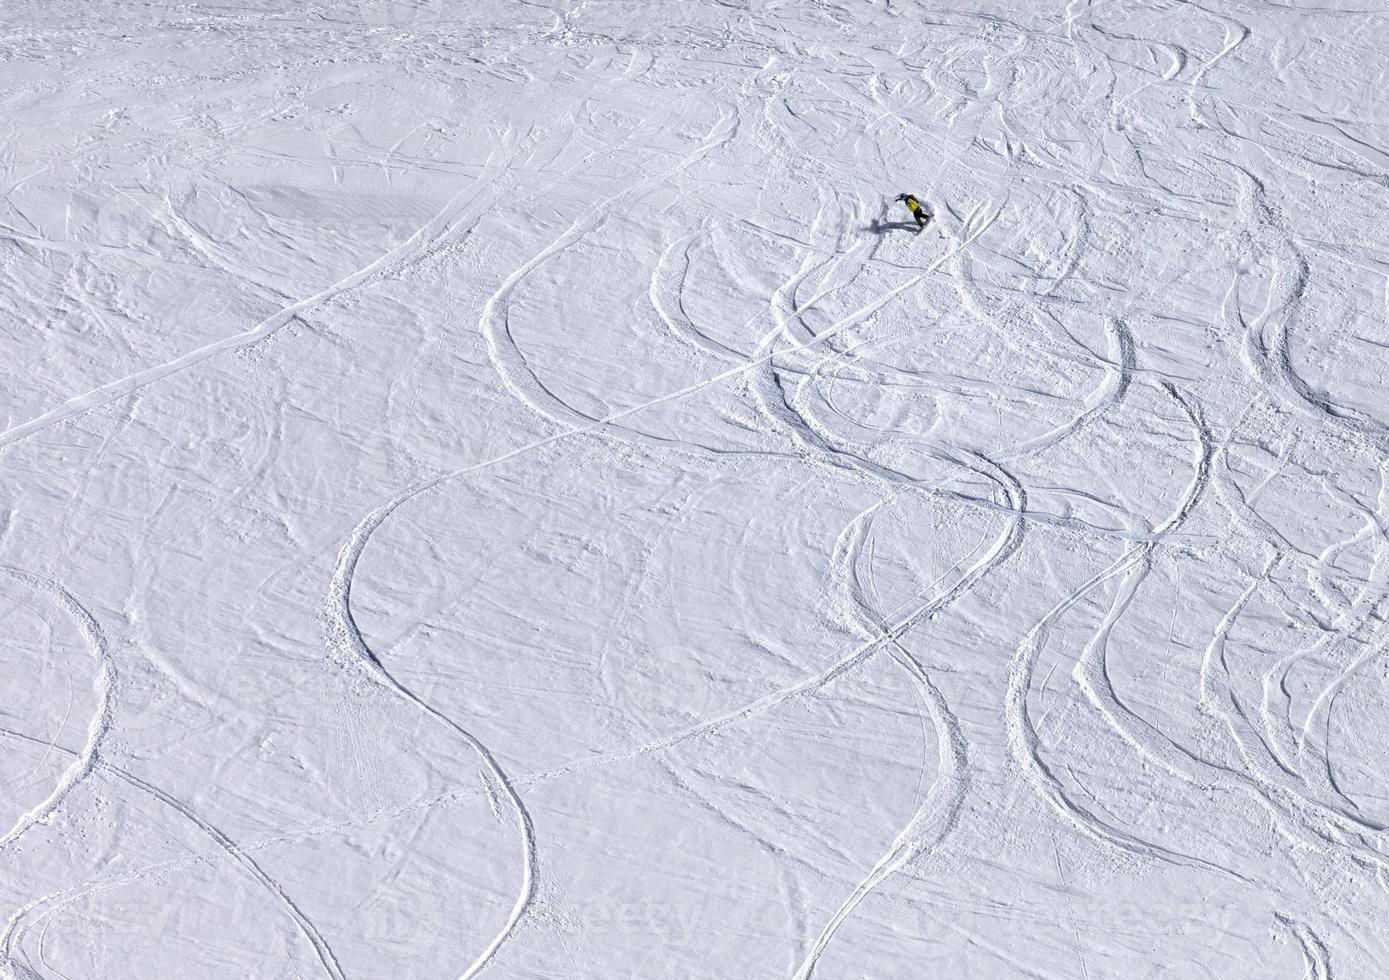 snowboarder cuesta abajo en pendiente fuera de pista con nieve recién caída foto